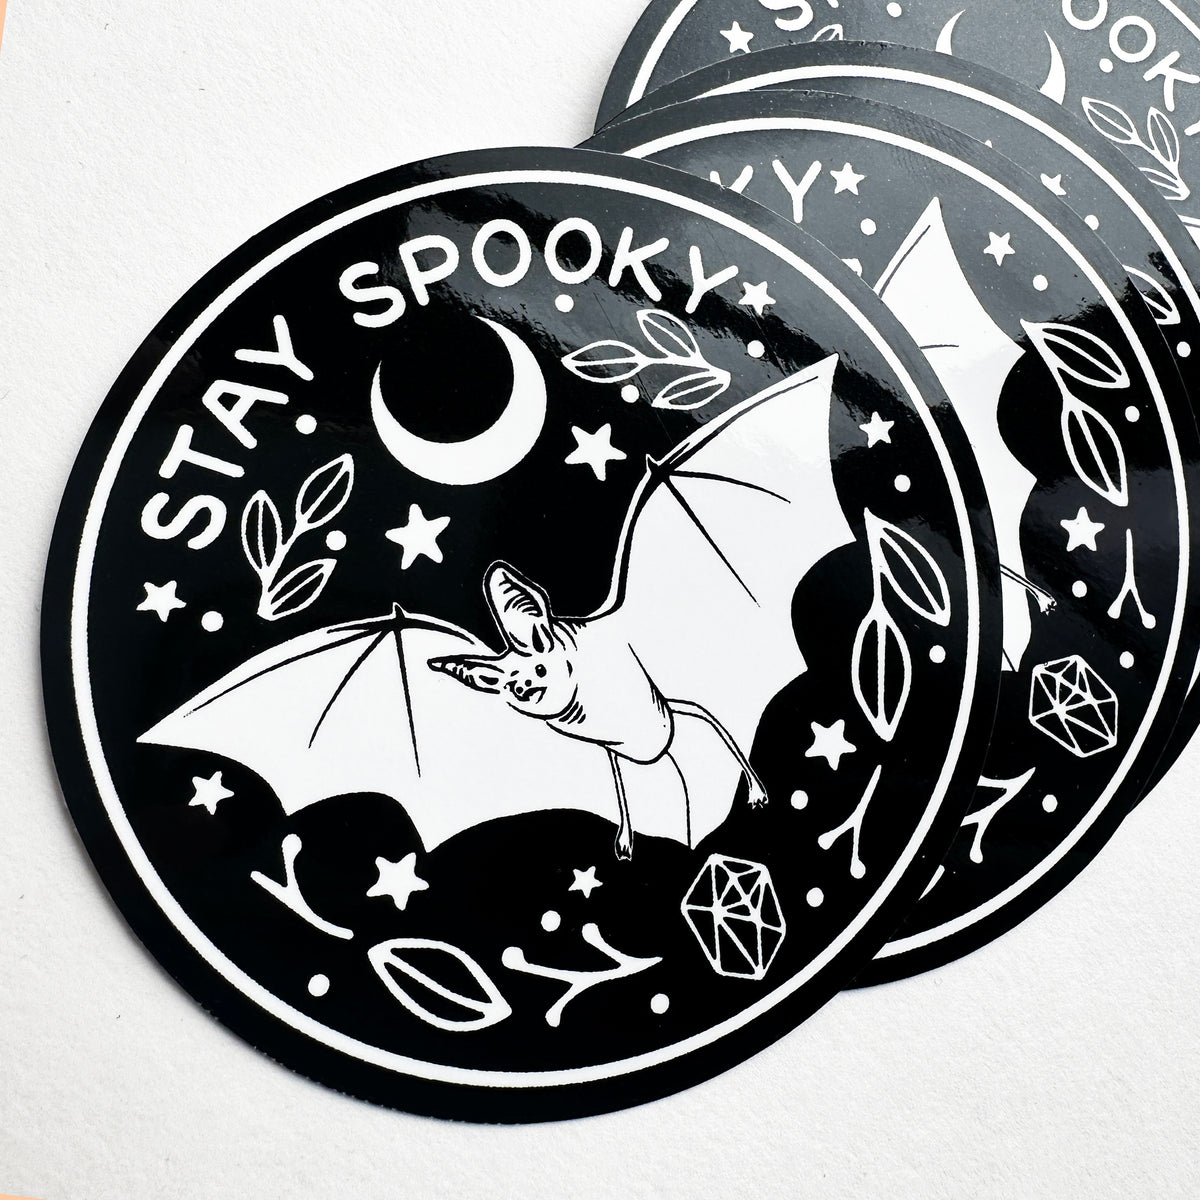 Stay Spooky Bat Decal Sticker